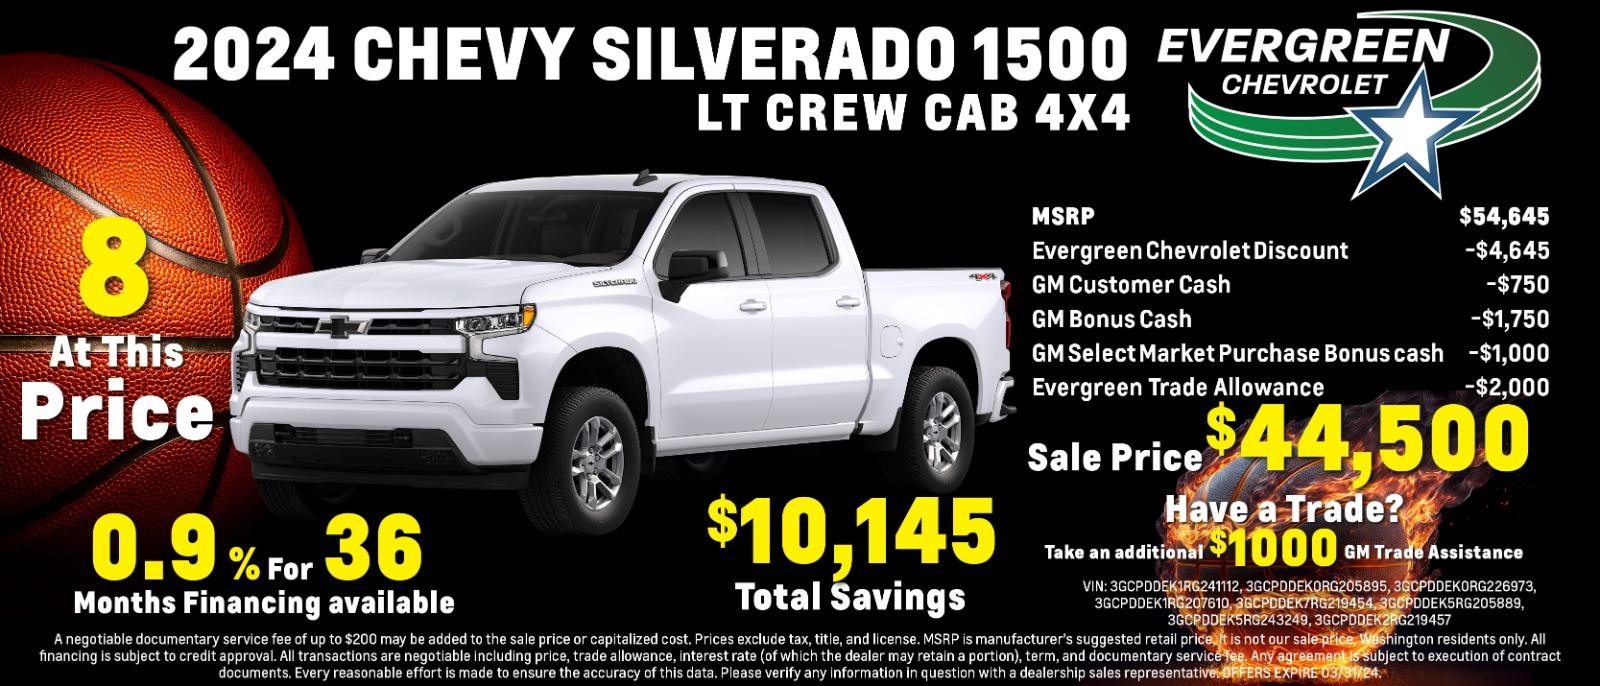 2024 Chevy Silverado 1500 LT Crew Cab 4x4